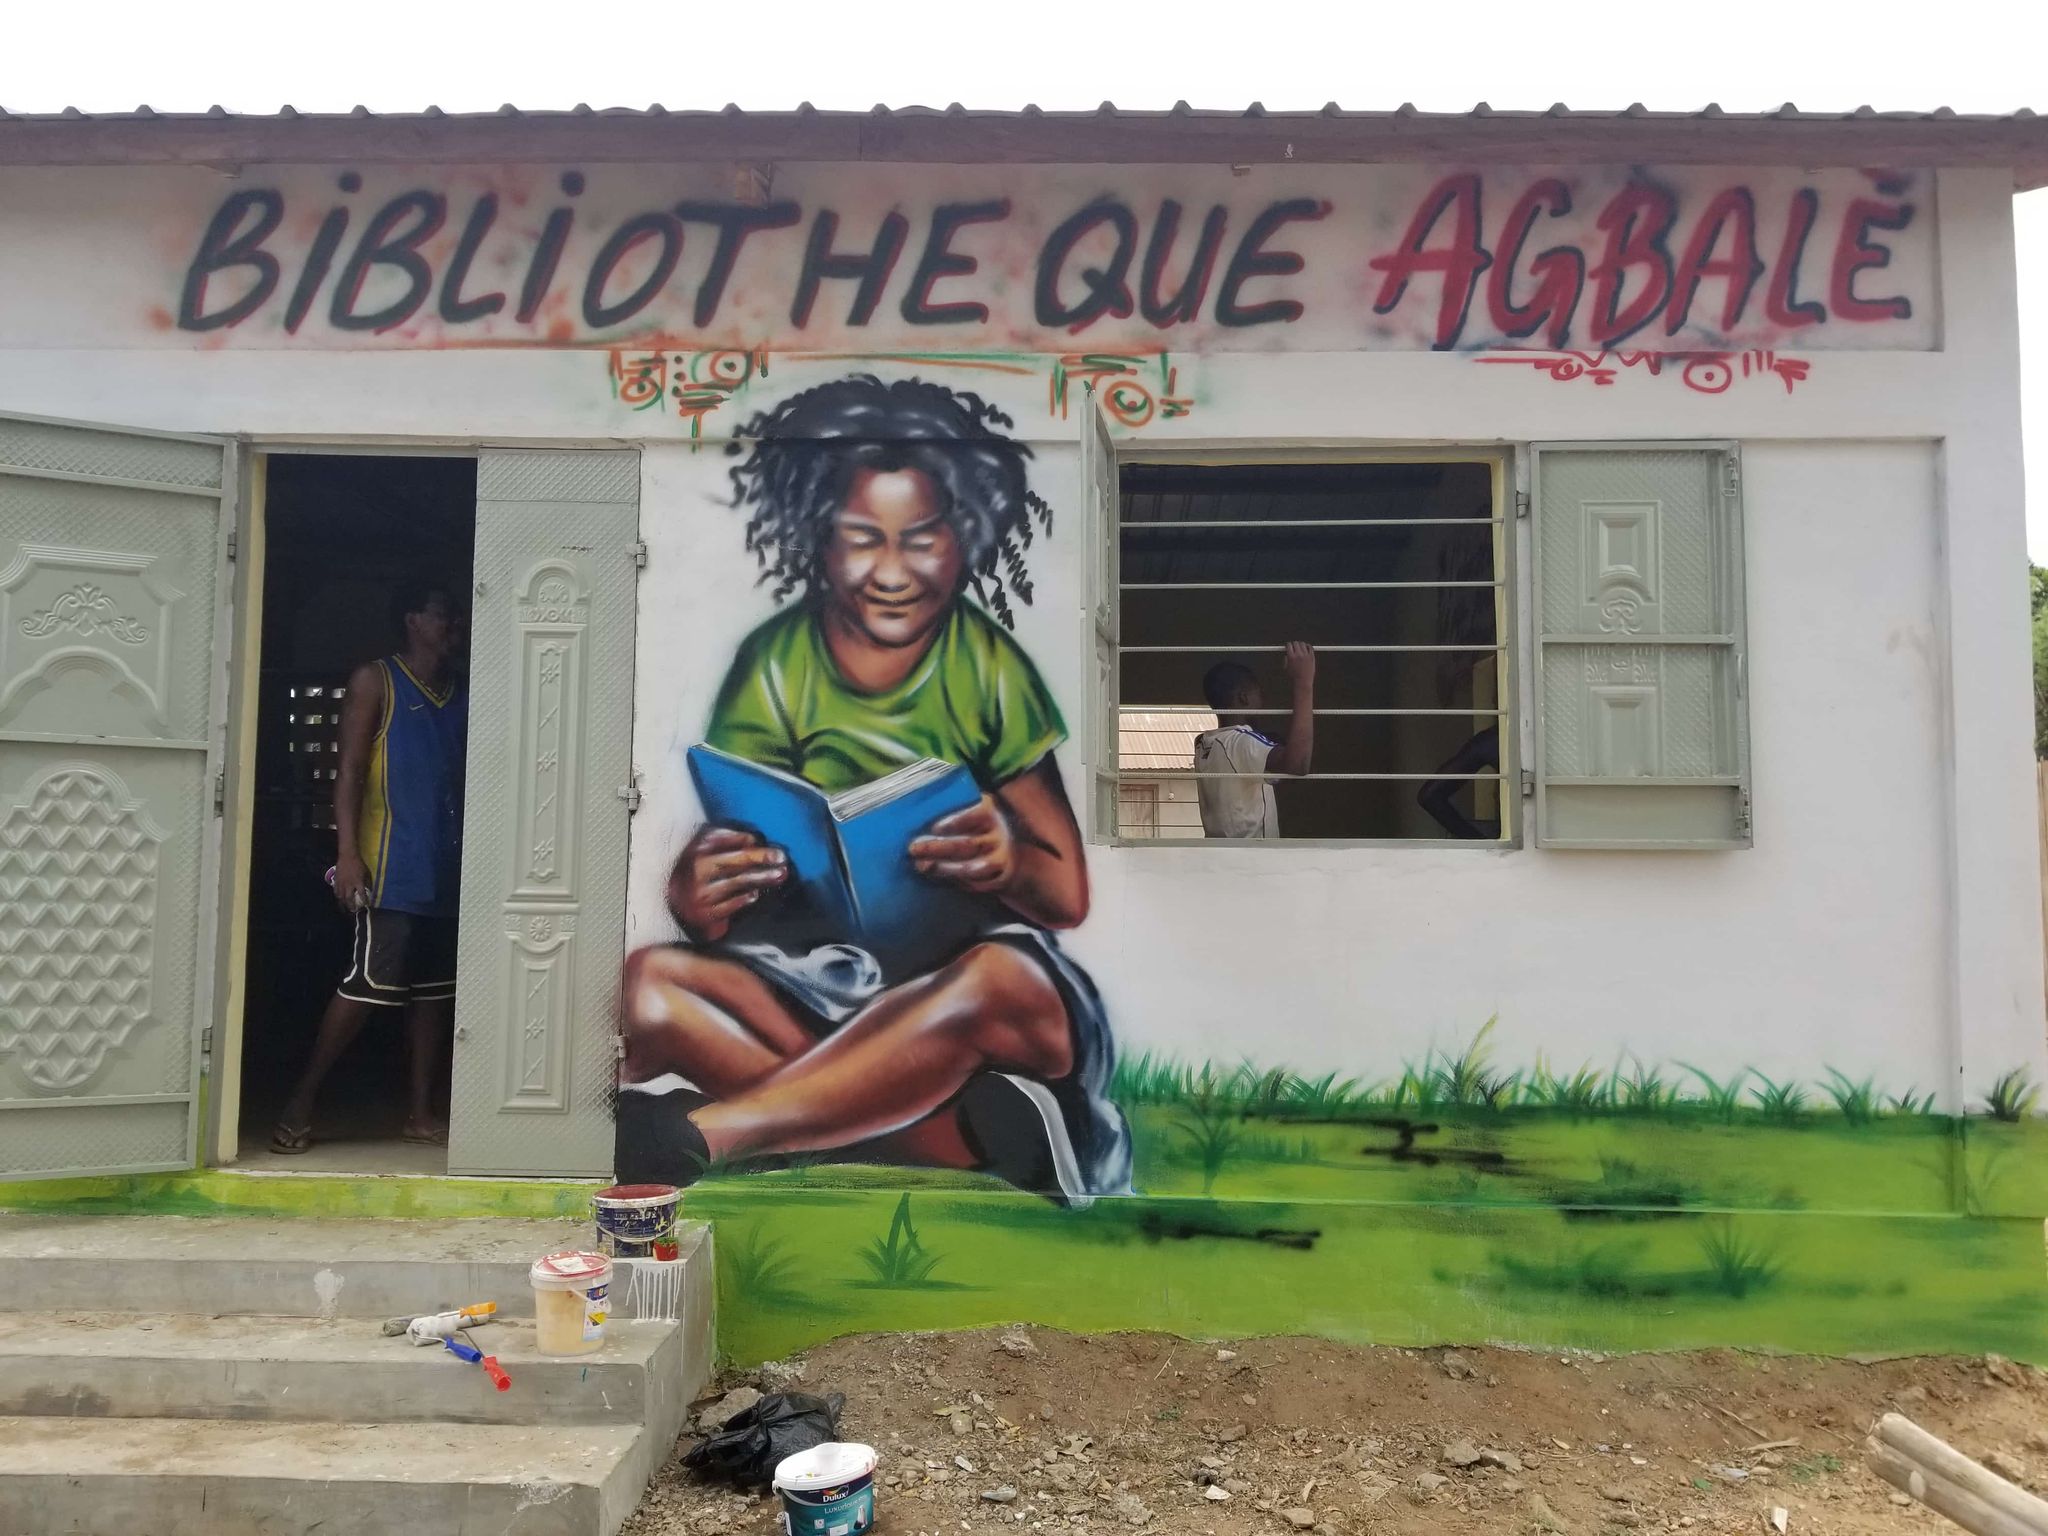 La Bibliothèque agbale au Togo en travaux et décorée de street art